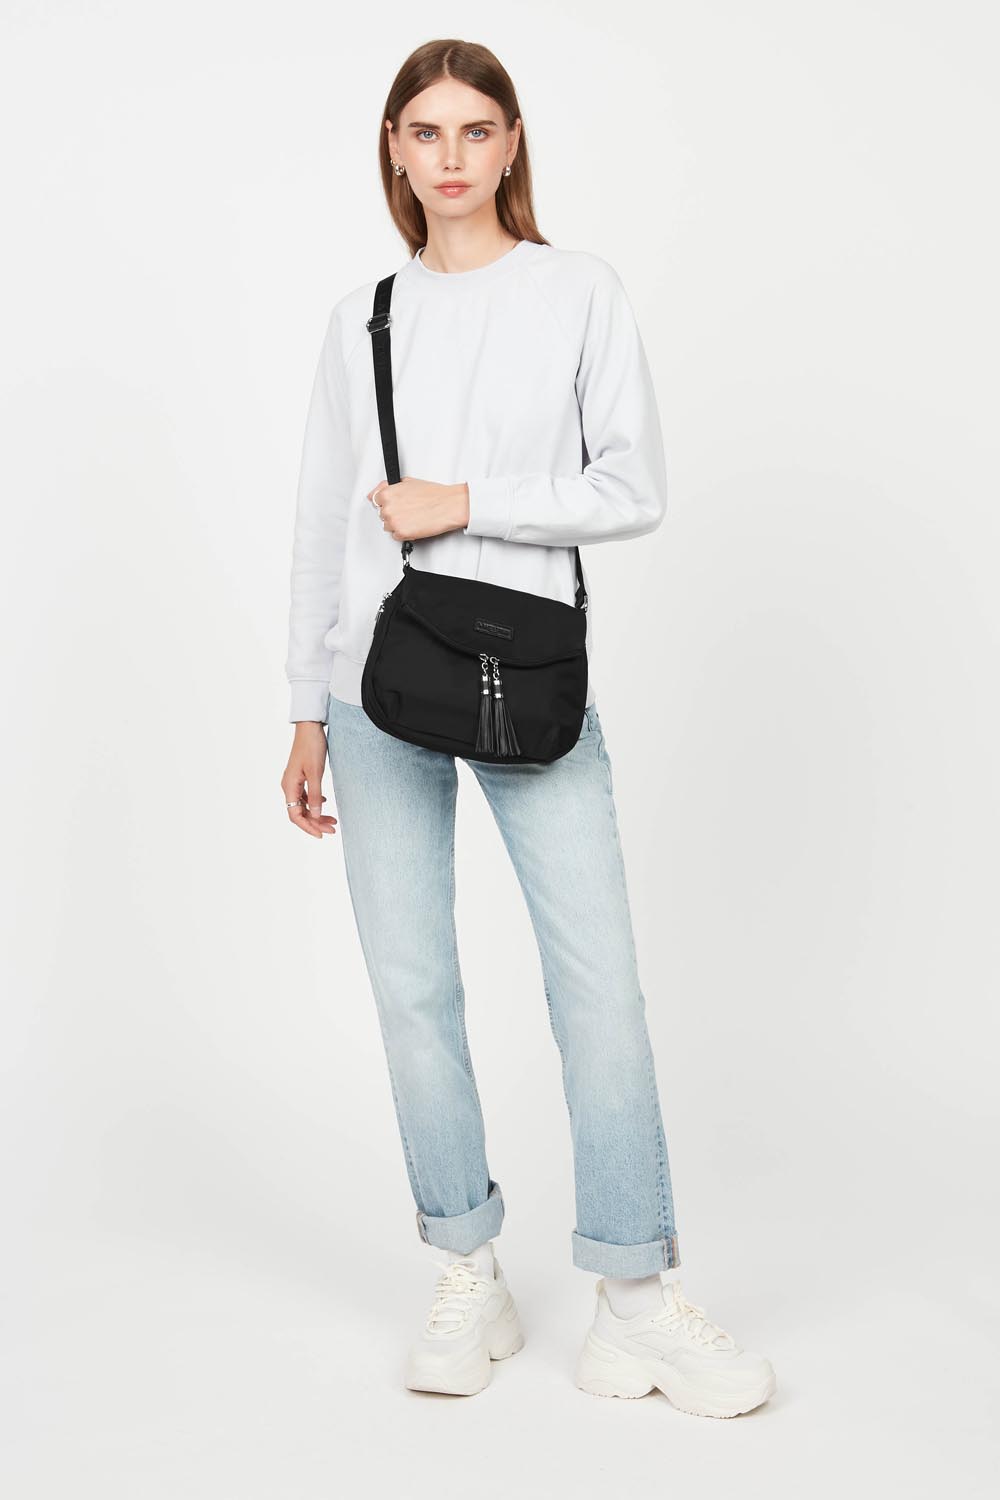 shoulder bag - basic pompon #couleur_noir